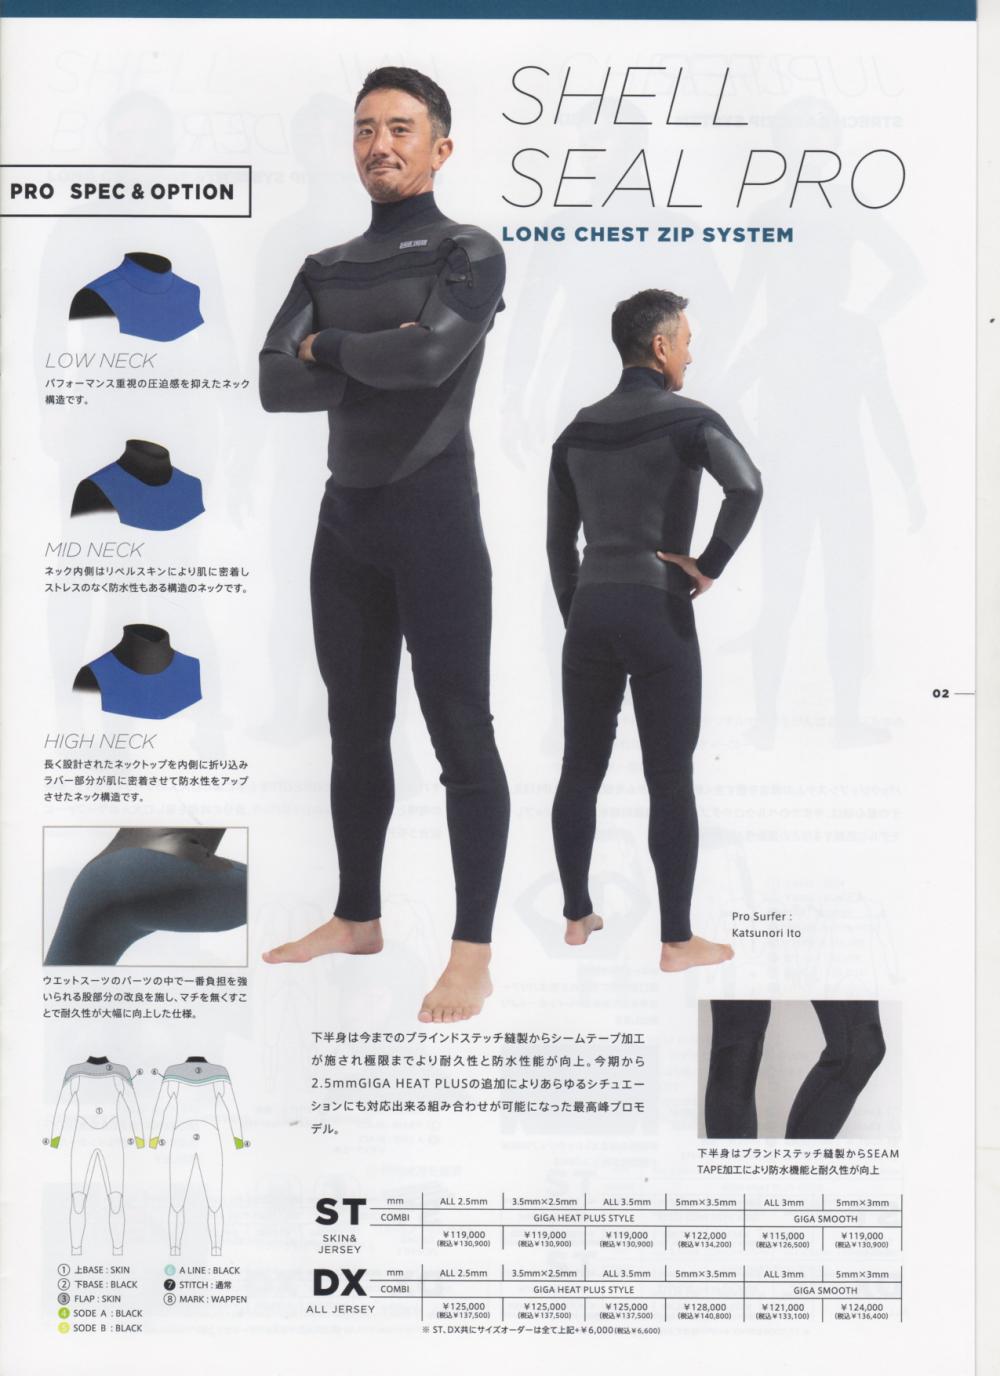 値下げ最高級ウエットスーツRevo wet suit美品 公式サイト www.m